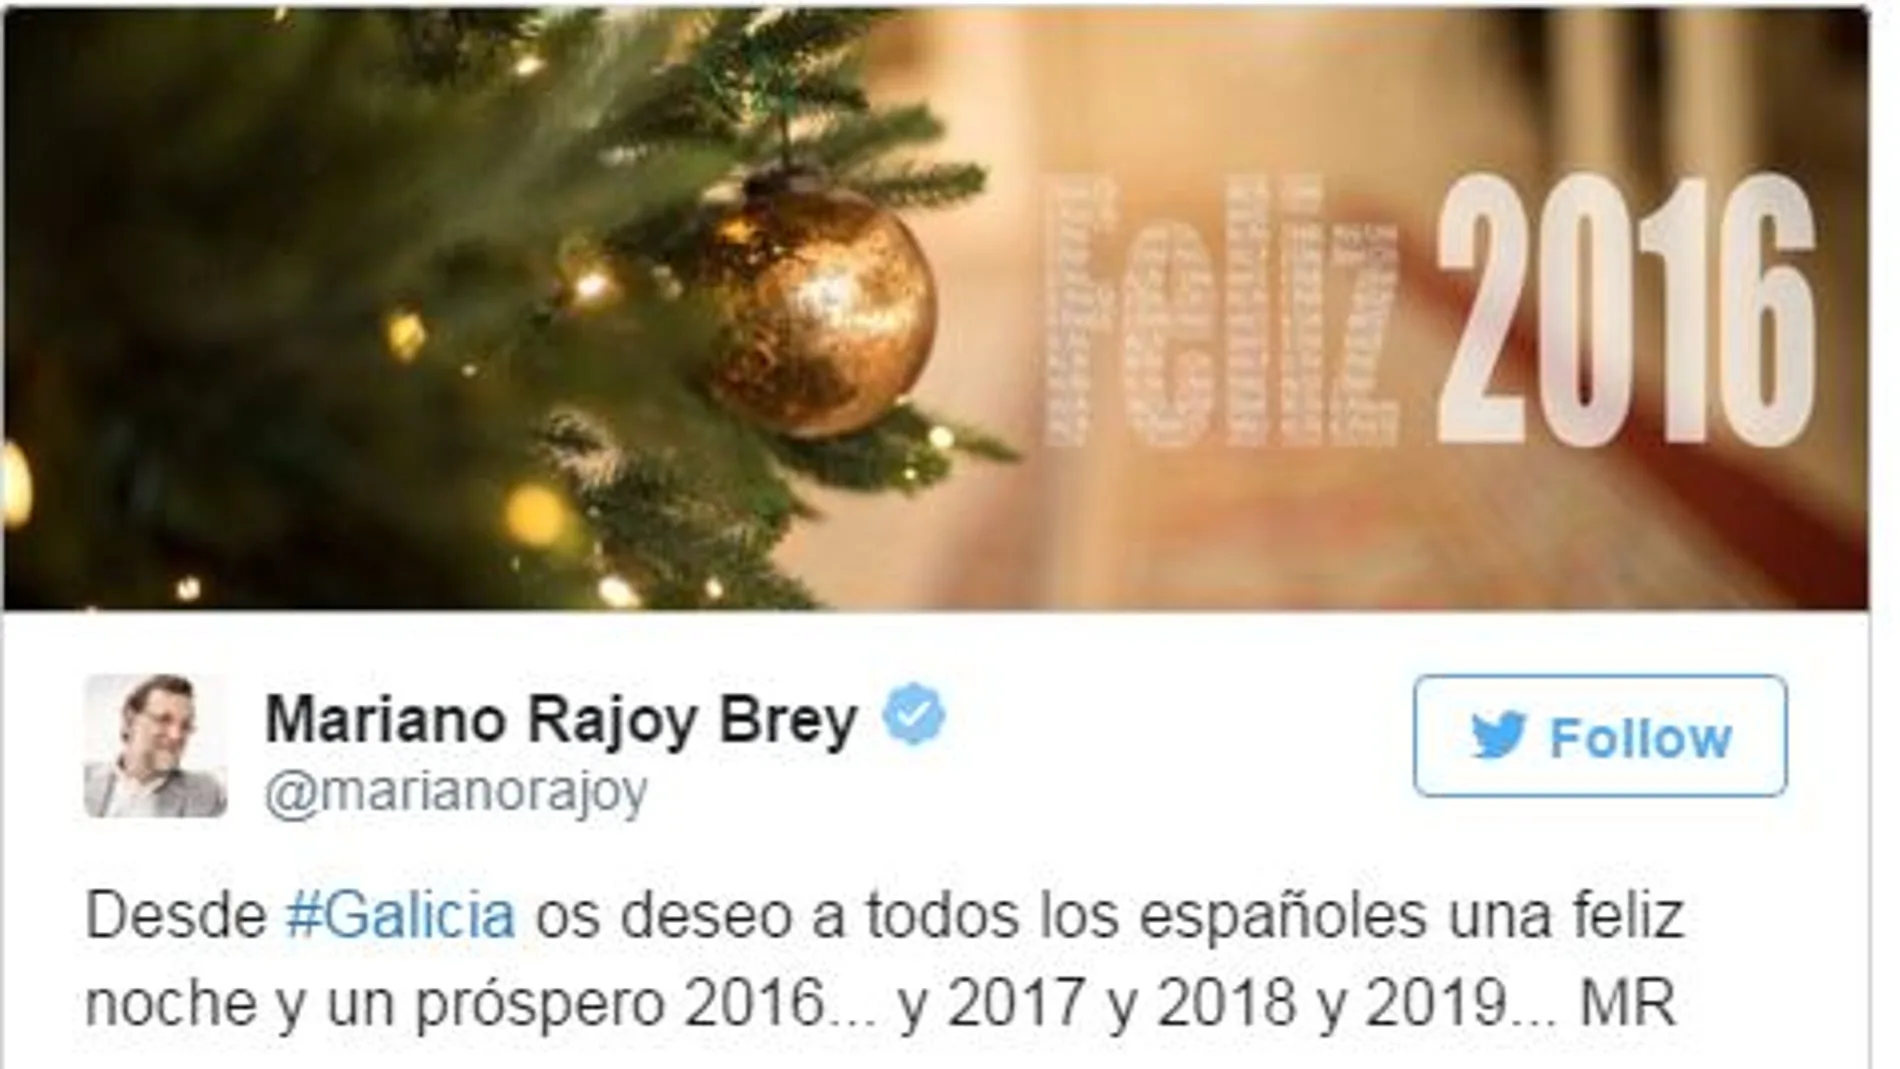 Rajoy desea a todos los españoles «un próspero 2016...y 2017 y 2018 y 2019»